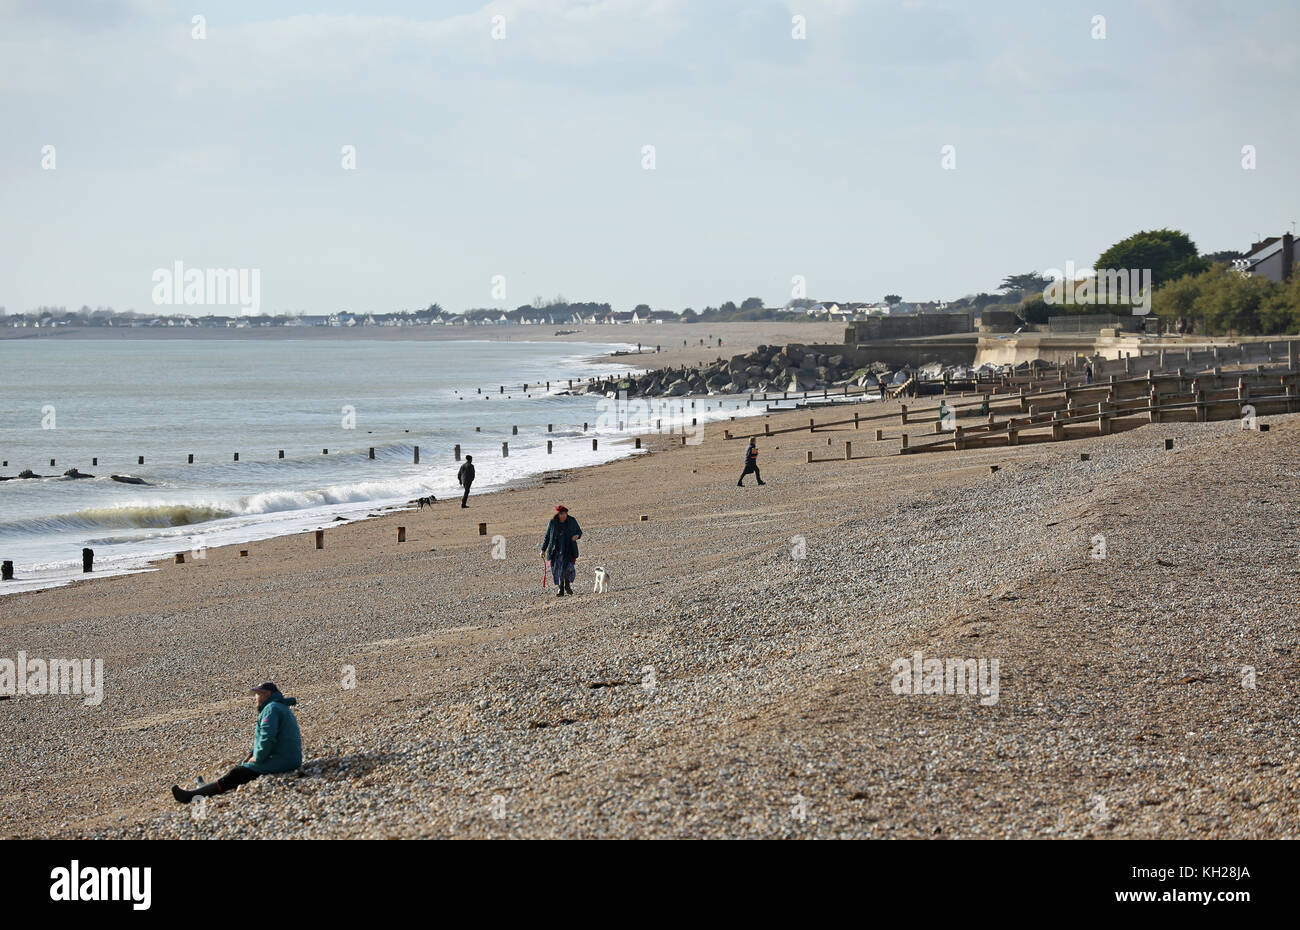 Les visiteurs et les résidents marchent sur la plage de Bognor, West Sussex, Royaume-Uni, par une journée ensoleillée d'hiver. Inclut des randonneurs, des joggeurs et des pêcheurs. Banque D'Images